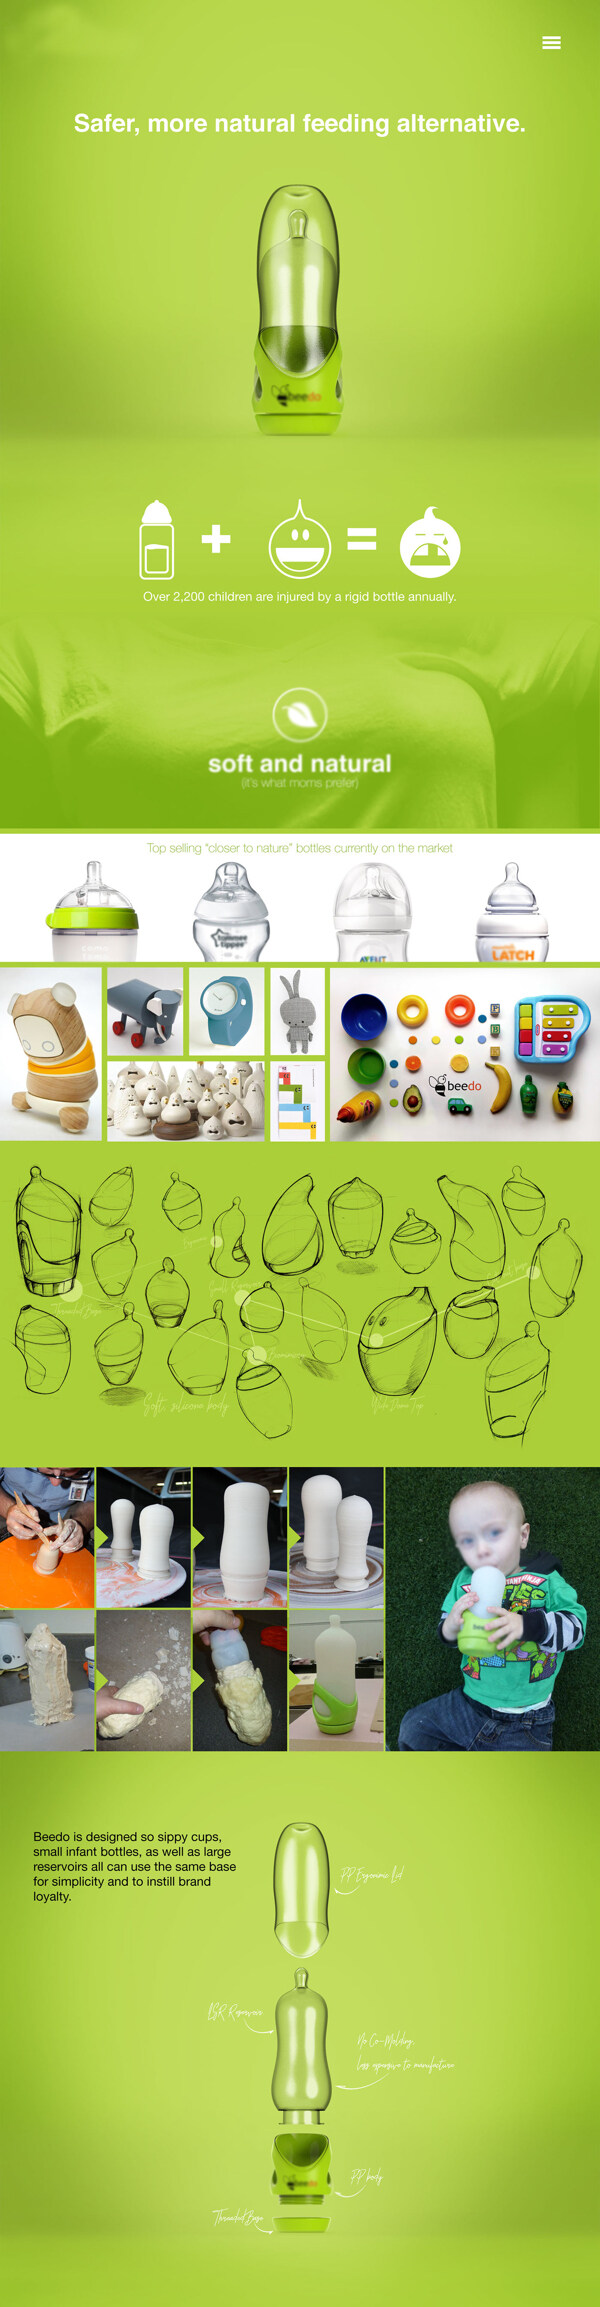 安全的概念婴儿奶瓶产品jpg素材